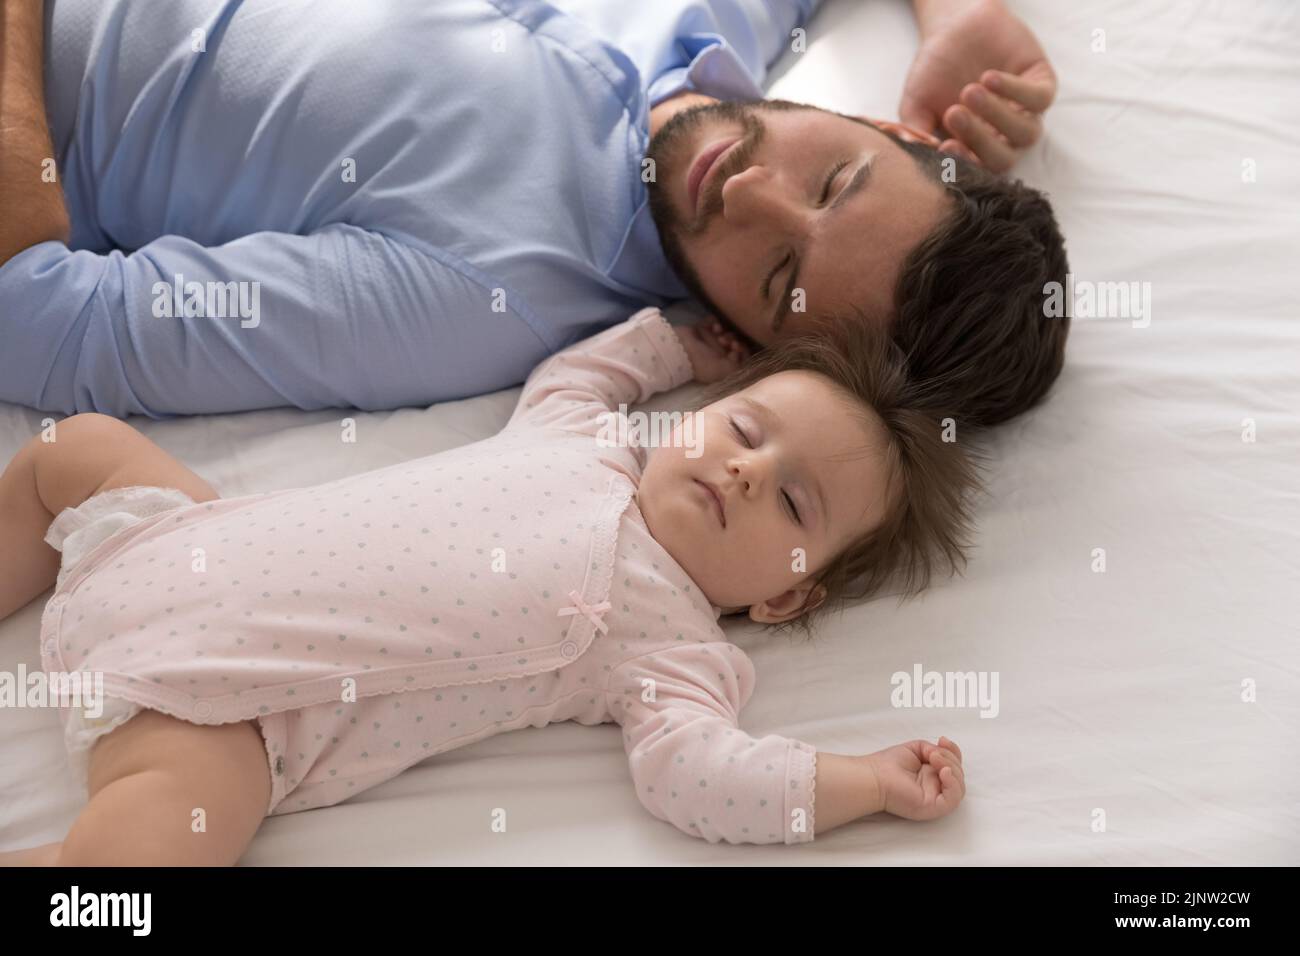 Padre cansado se queda dormido cerca del recién nacido, cerca Foto de stock